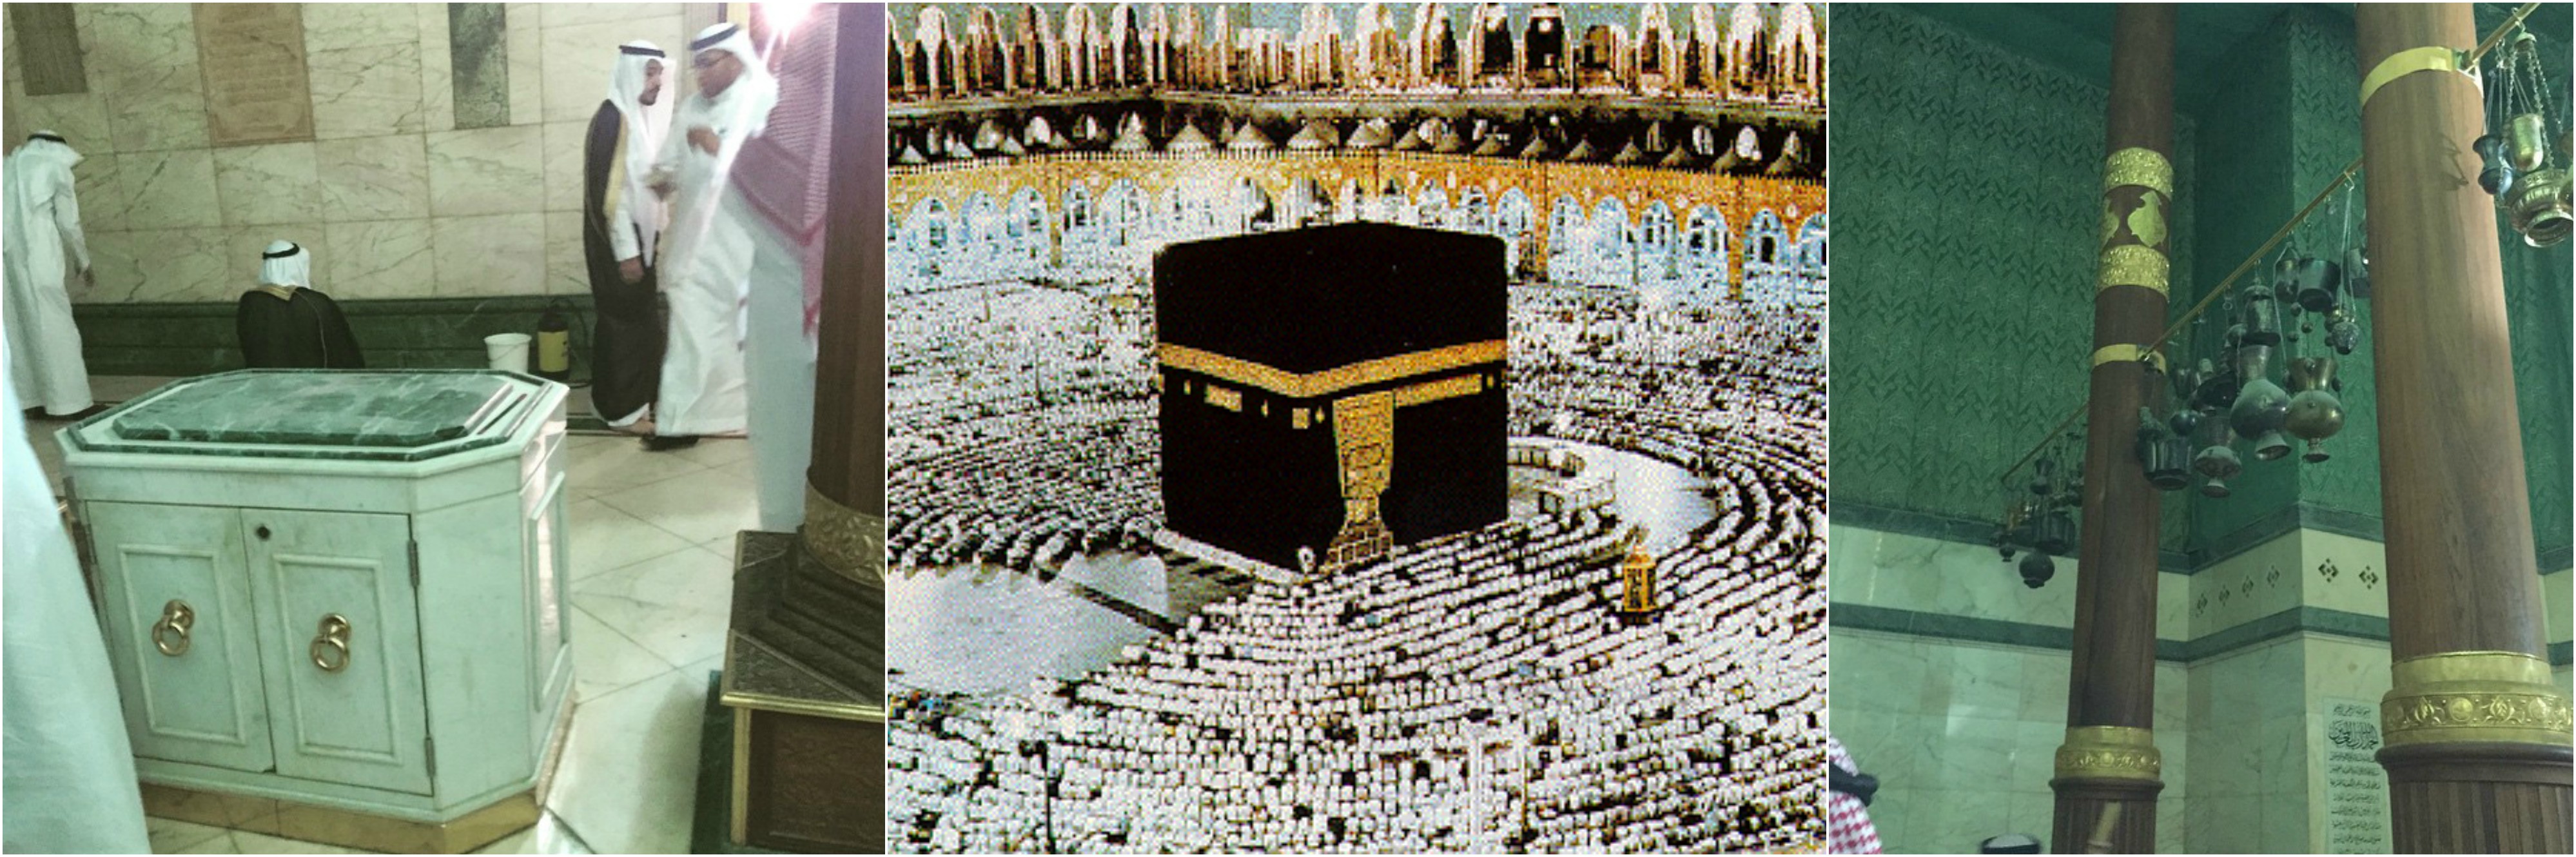 Что находится в мекке в каабе. Храм Кааба чёрный камень. Мекка куб Кааба внутри. Мекка мечеть Кааба внутри. Кааба в Мекке камень Кааба.